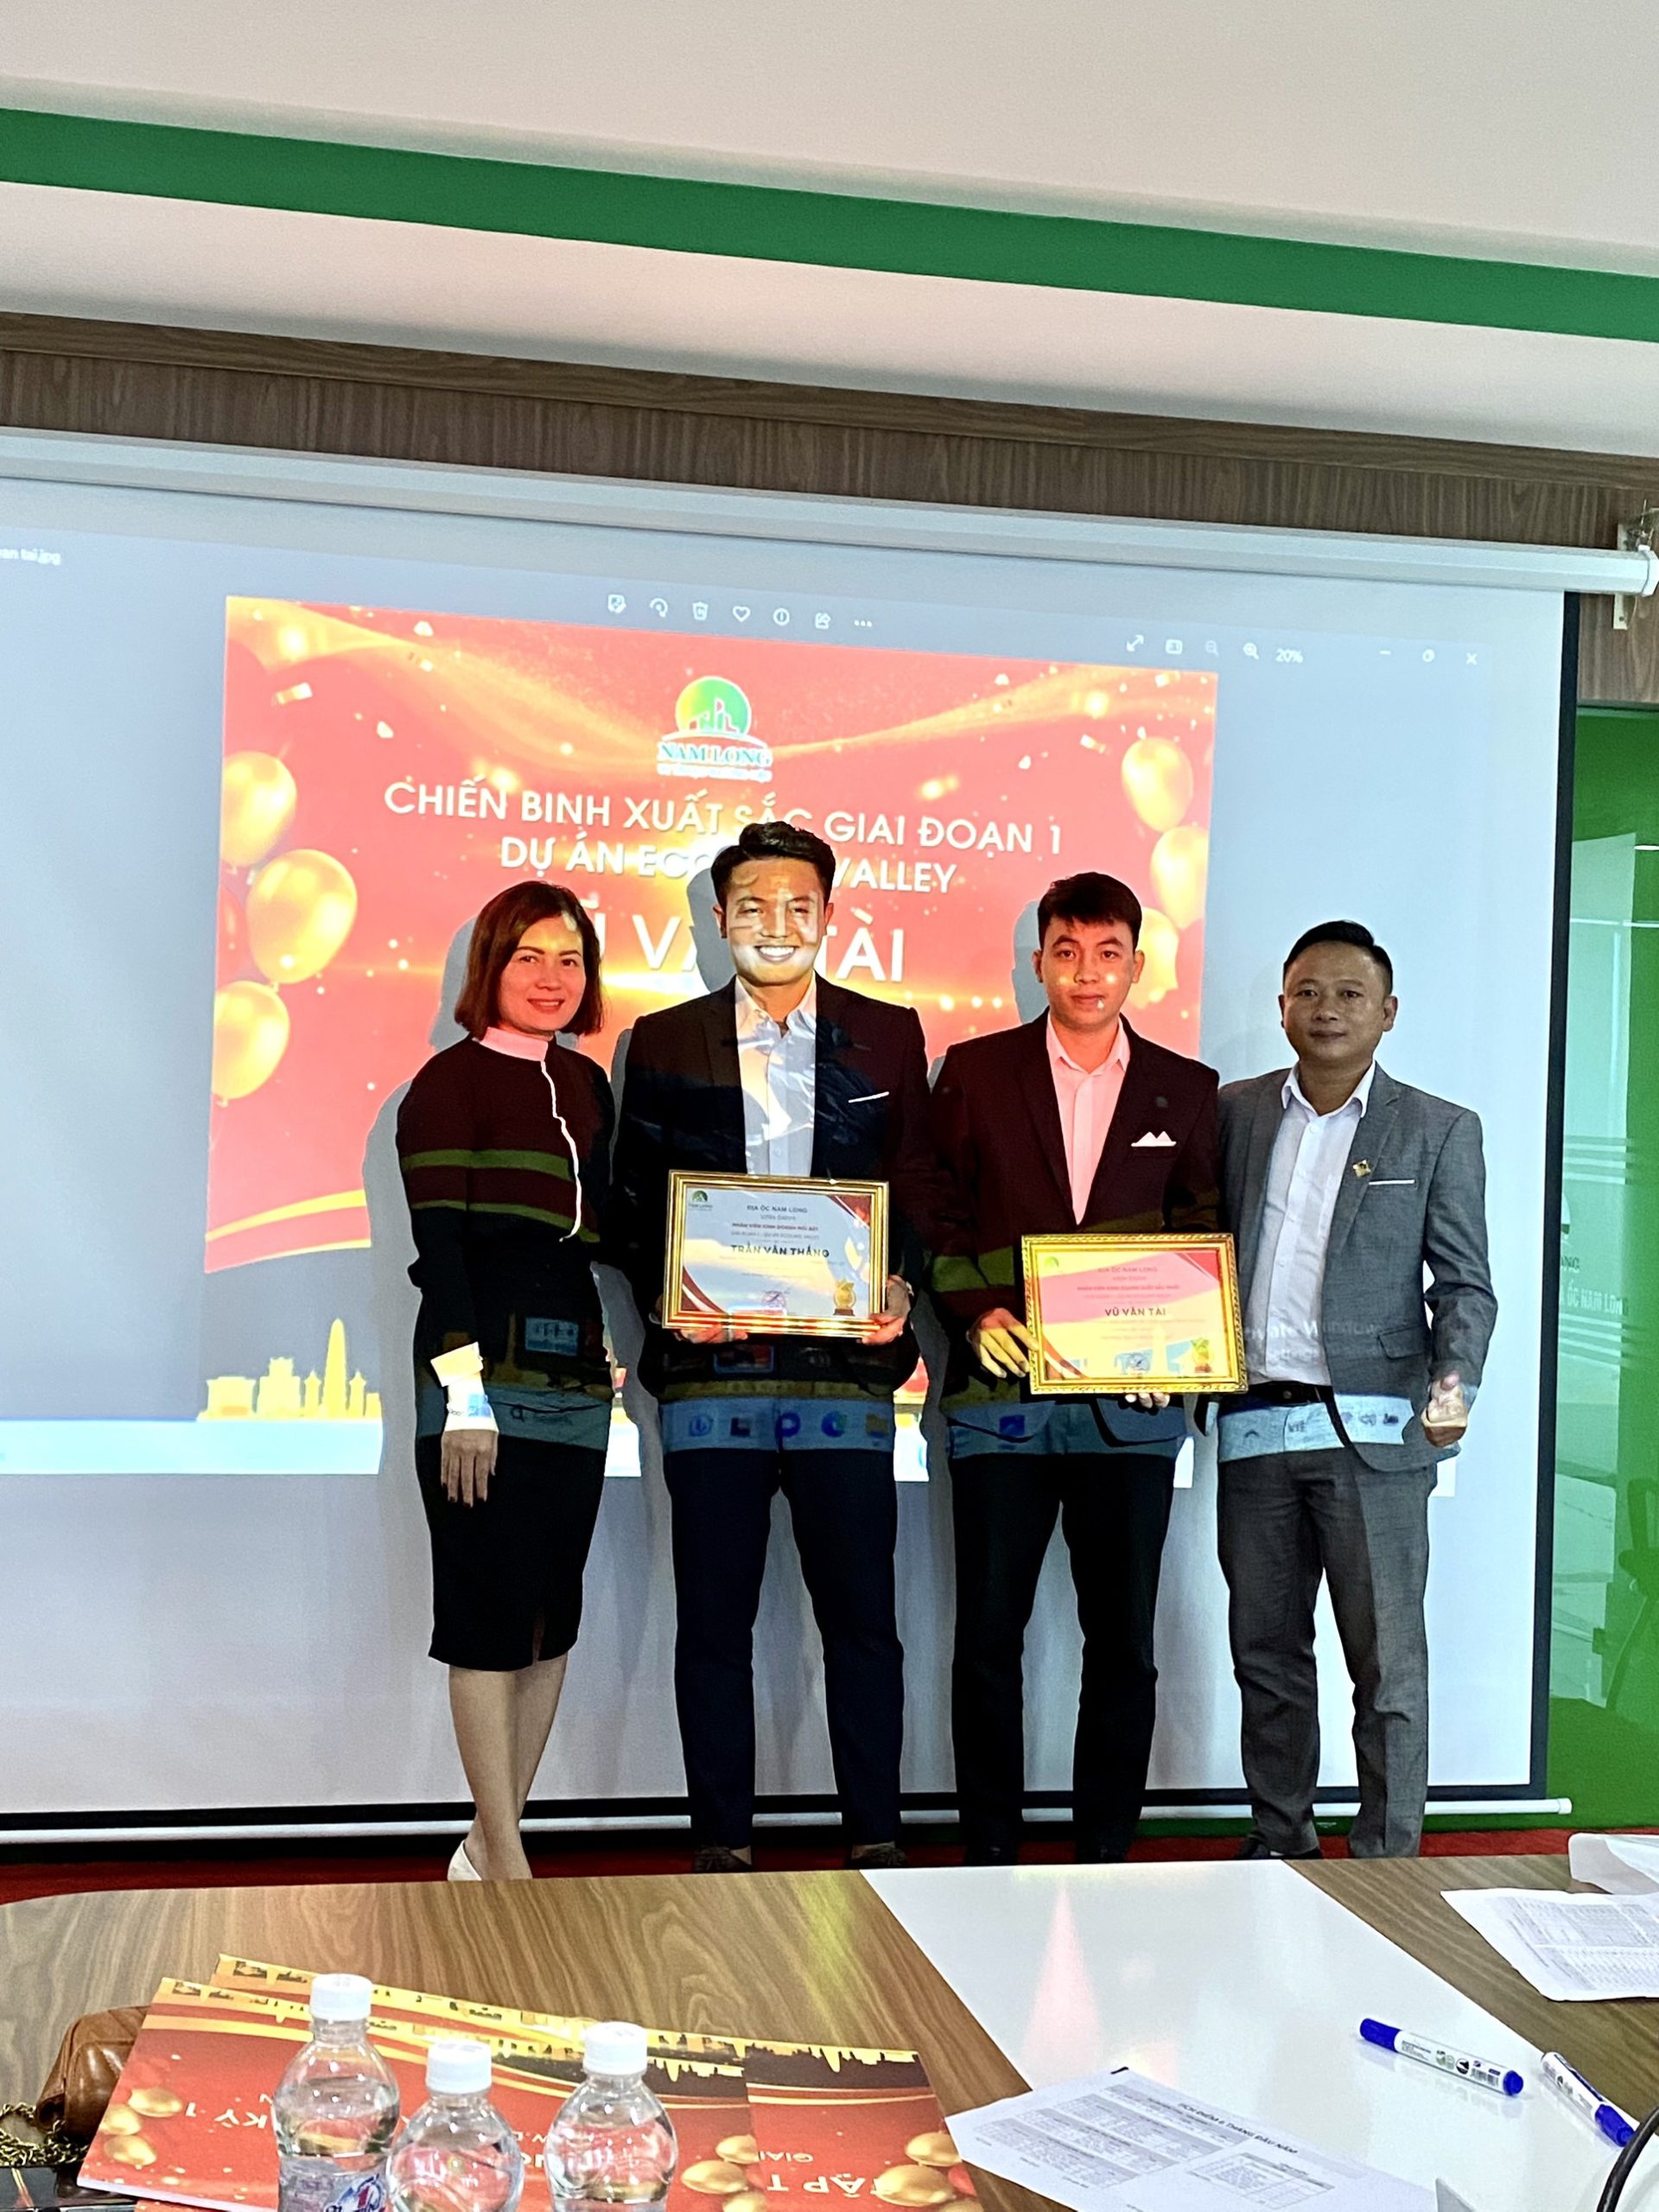 Bà Lê Thị Linh Giám đốc kinh doanh đại diện Ban Lãnh đạo vinh danh 2 cá nhân xuất sắc nhất trong giai đoạn 1 dự án Ecolake Valey